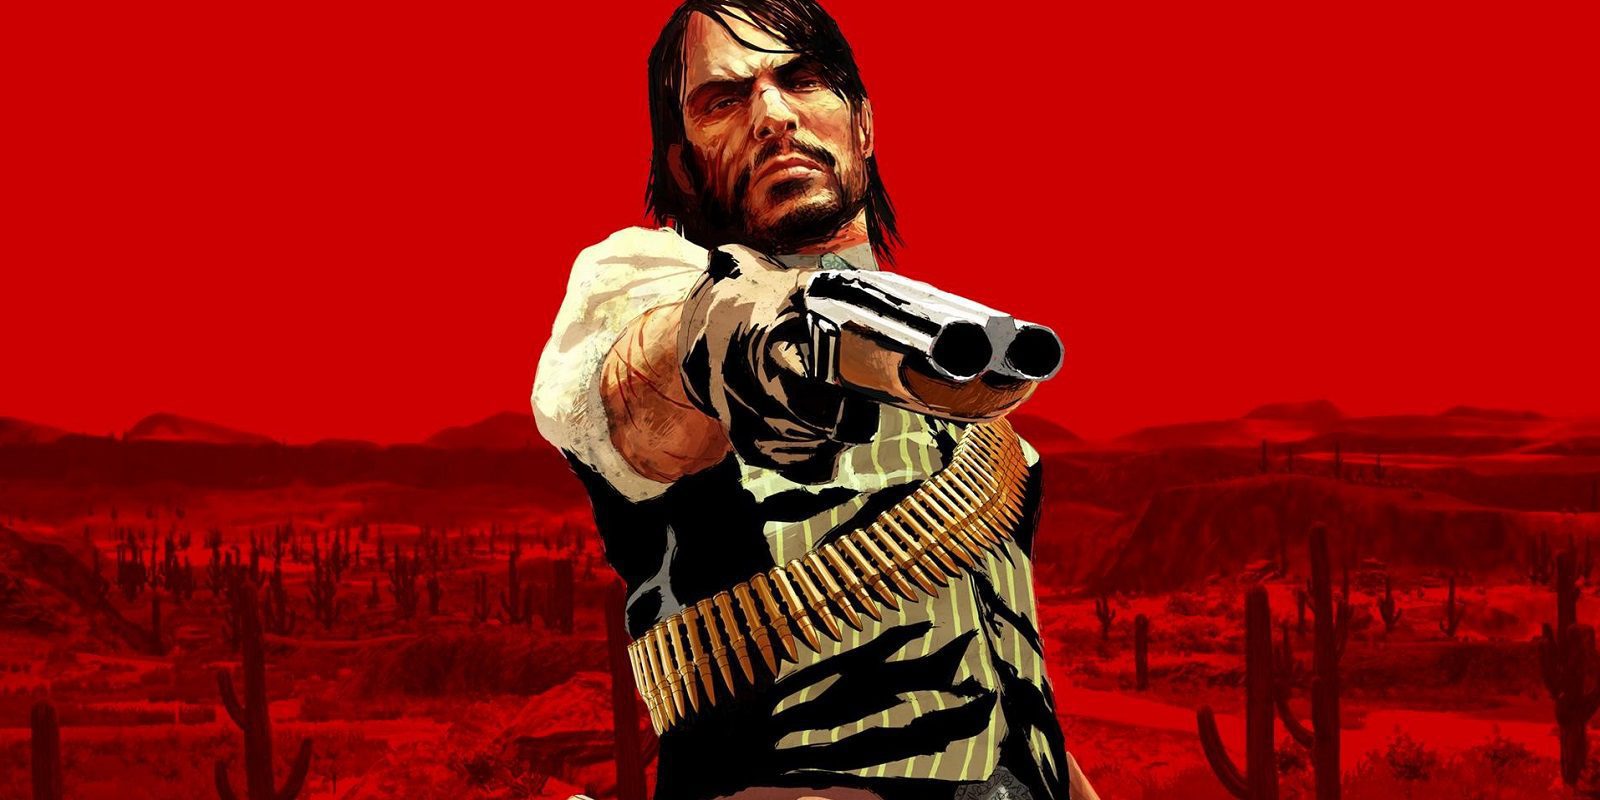 Un nuevo 'Red Dead Redemption' podría estar en desarrollo según esta enigmática imagen